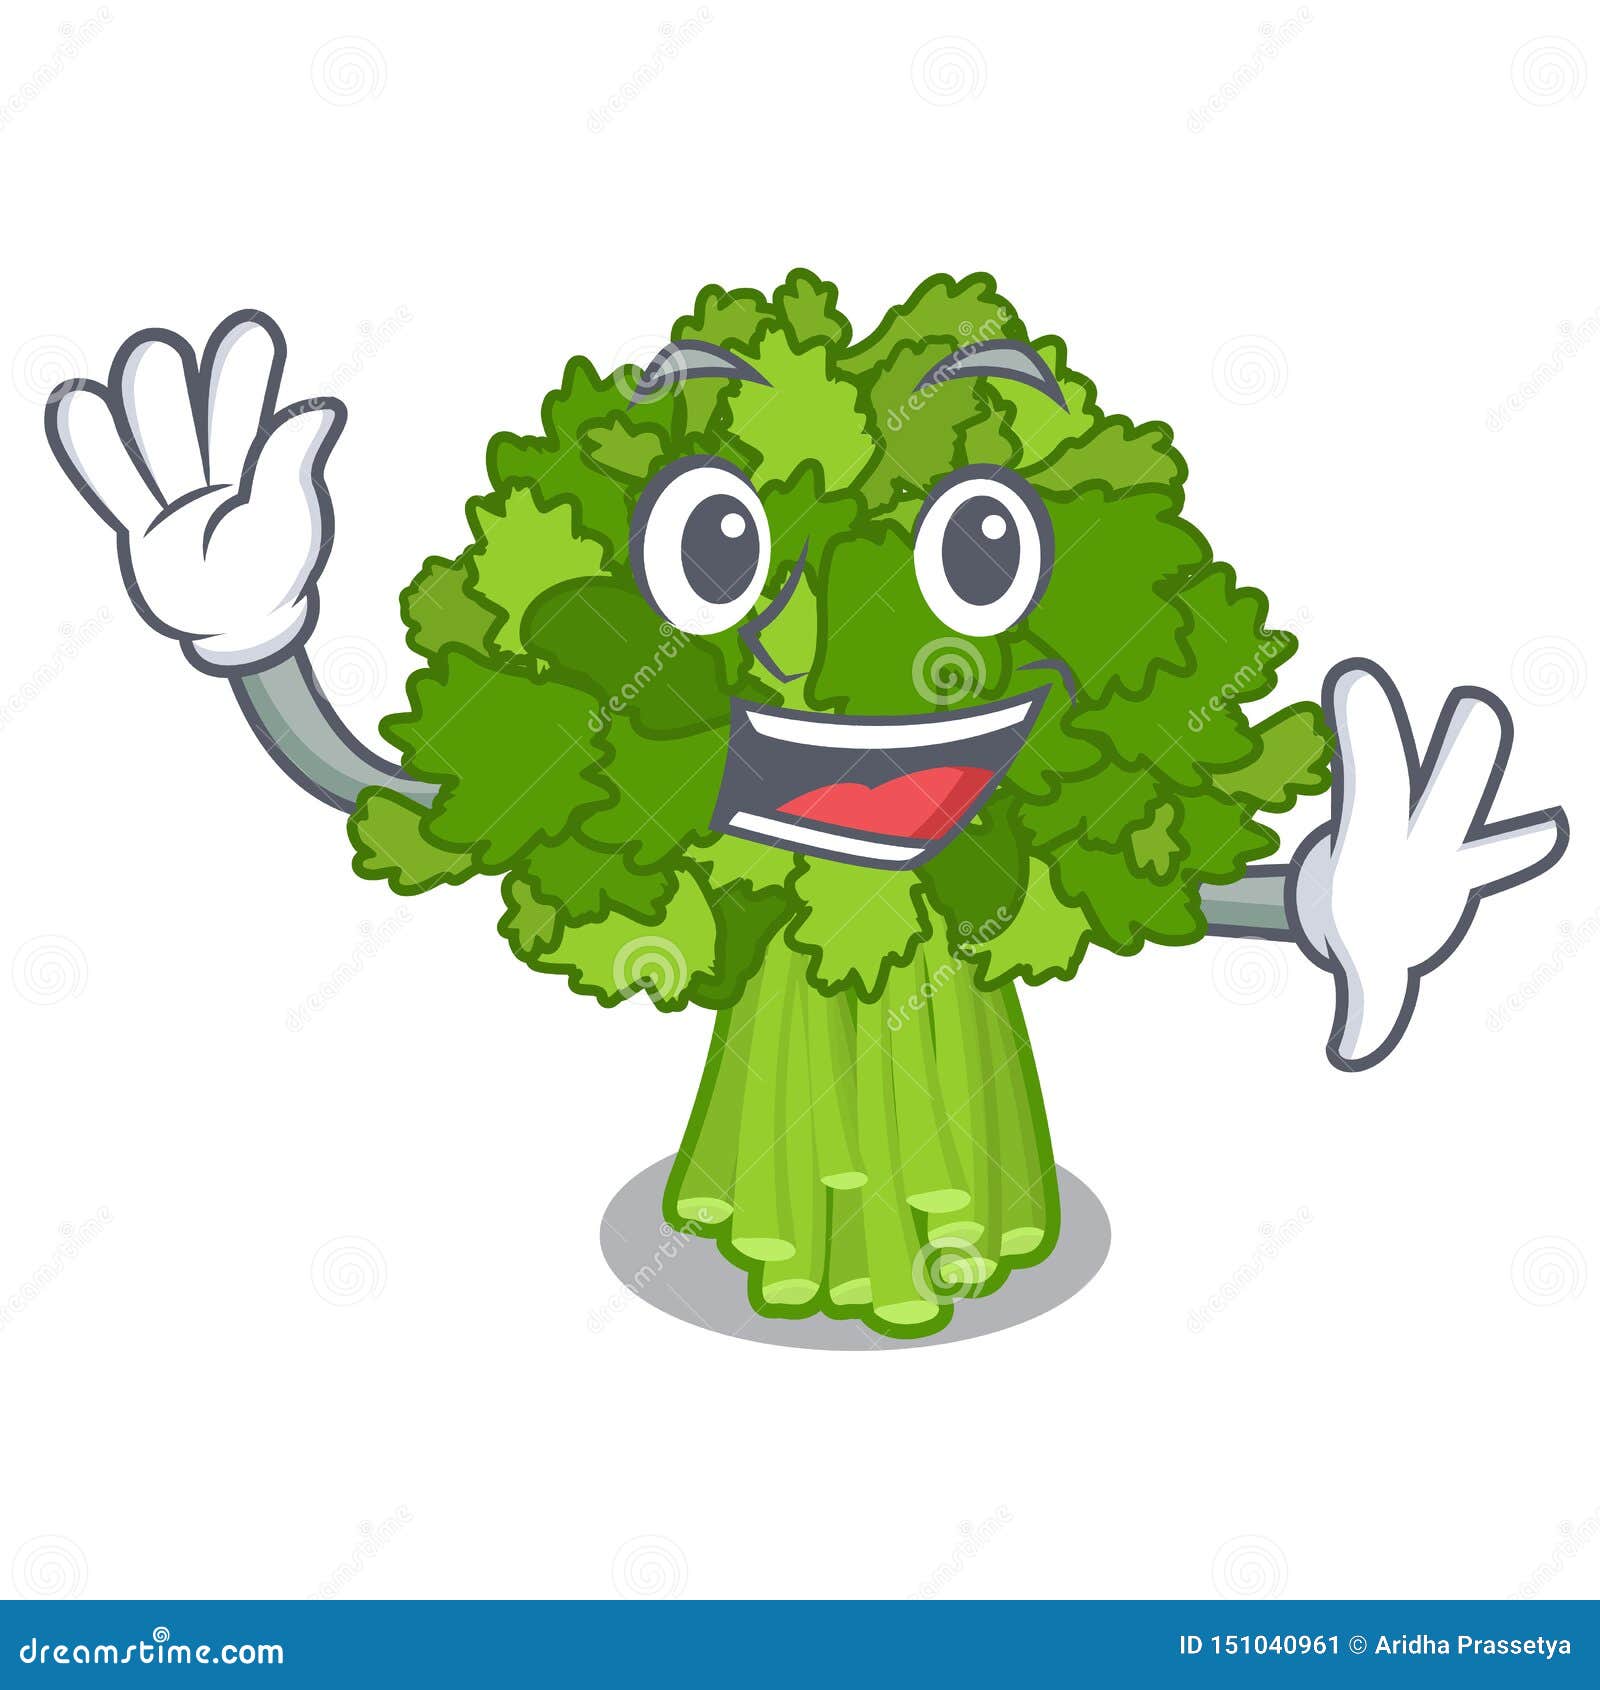 waving brocoli rabe in the cartoon 